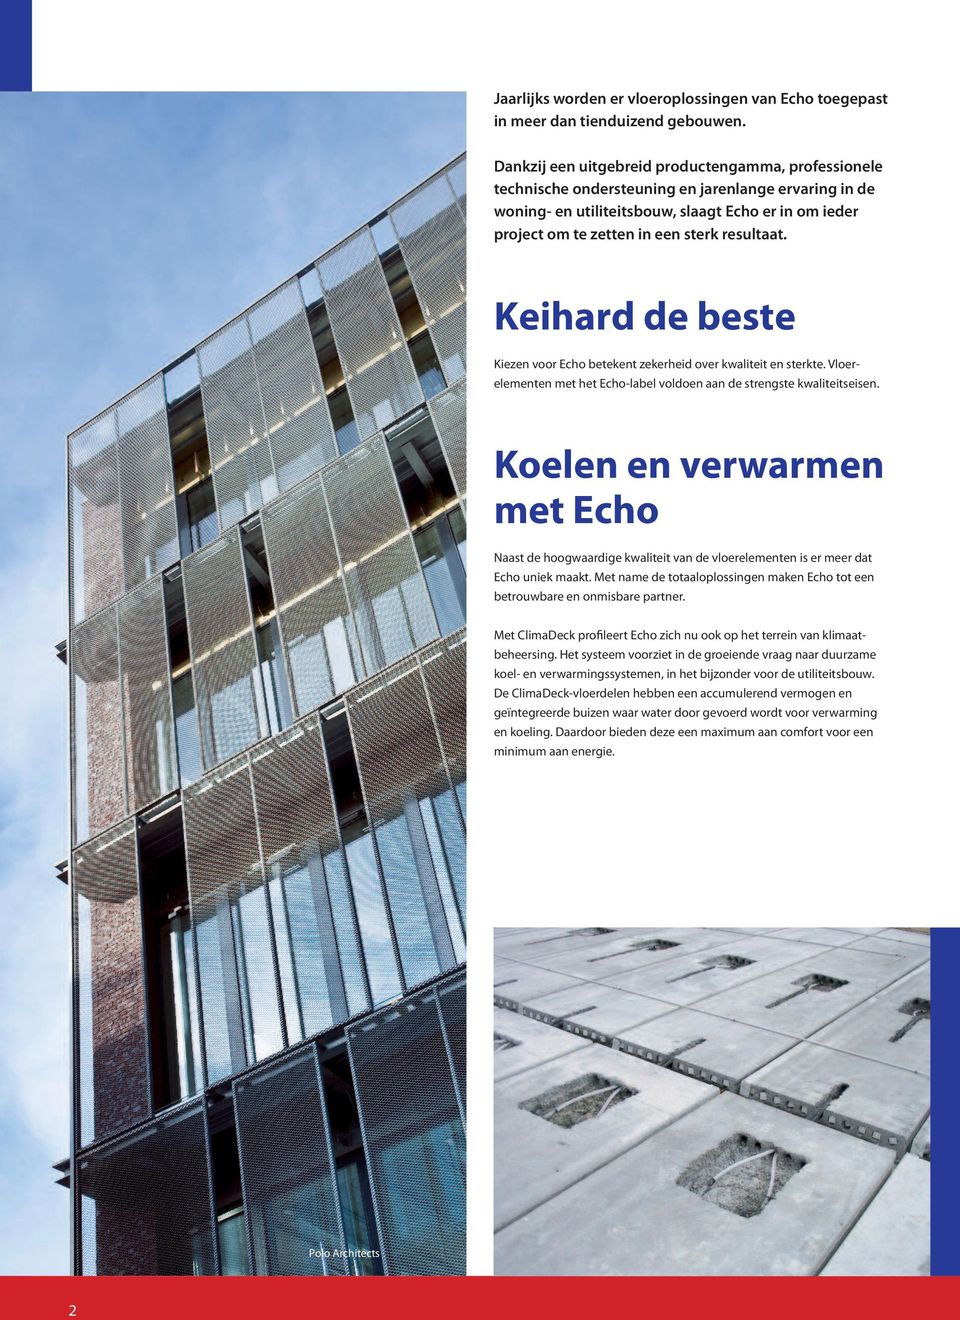 resultaat. Keihard de beste Kiezen voor Echo betekent zekerheid over kwaliteit en sterkte. Vloer - elementen met het Echo-label voldoen aan de strengste kwaliteitseisen.